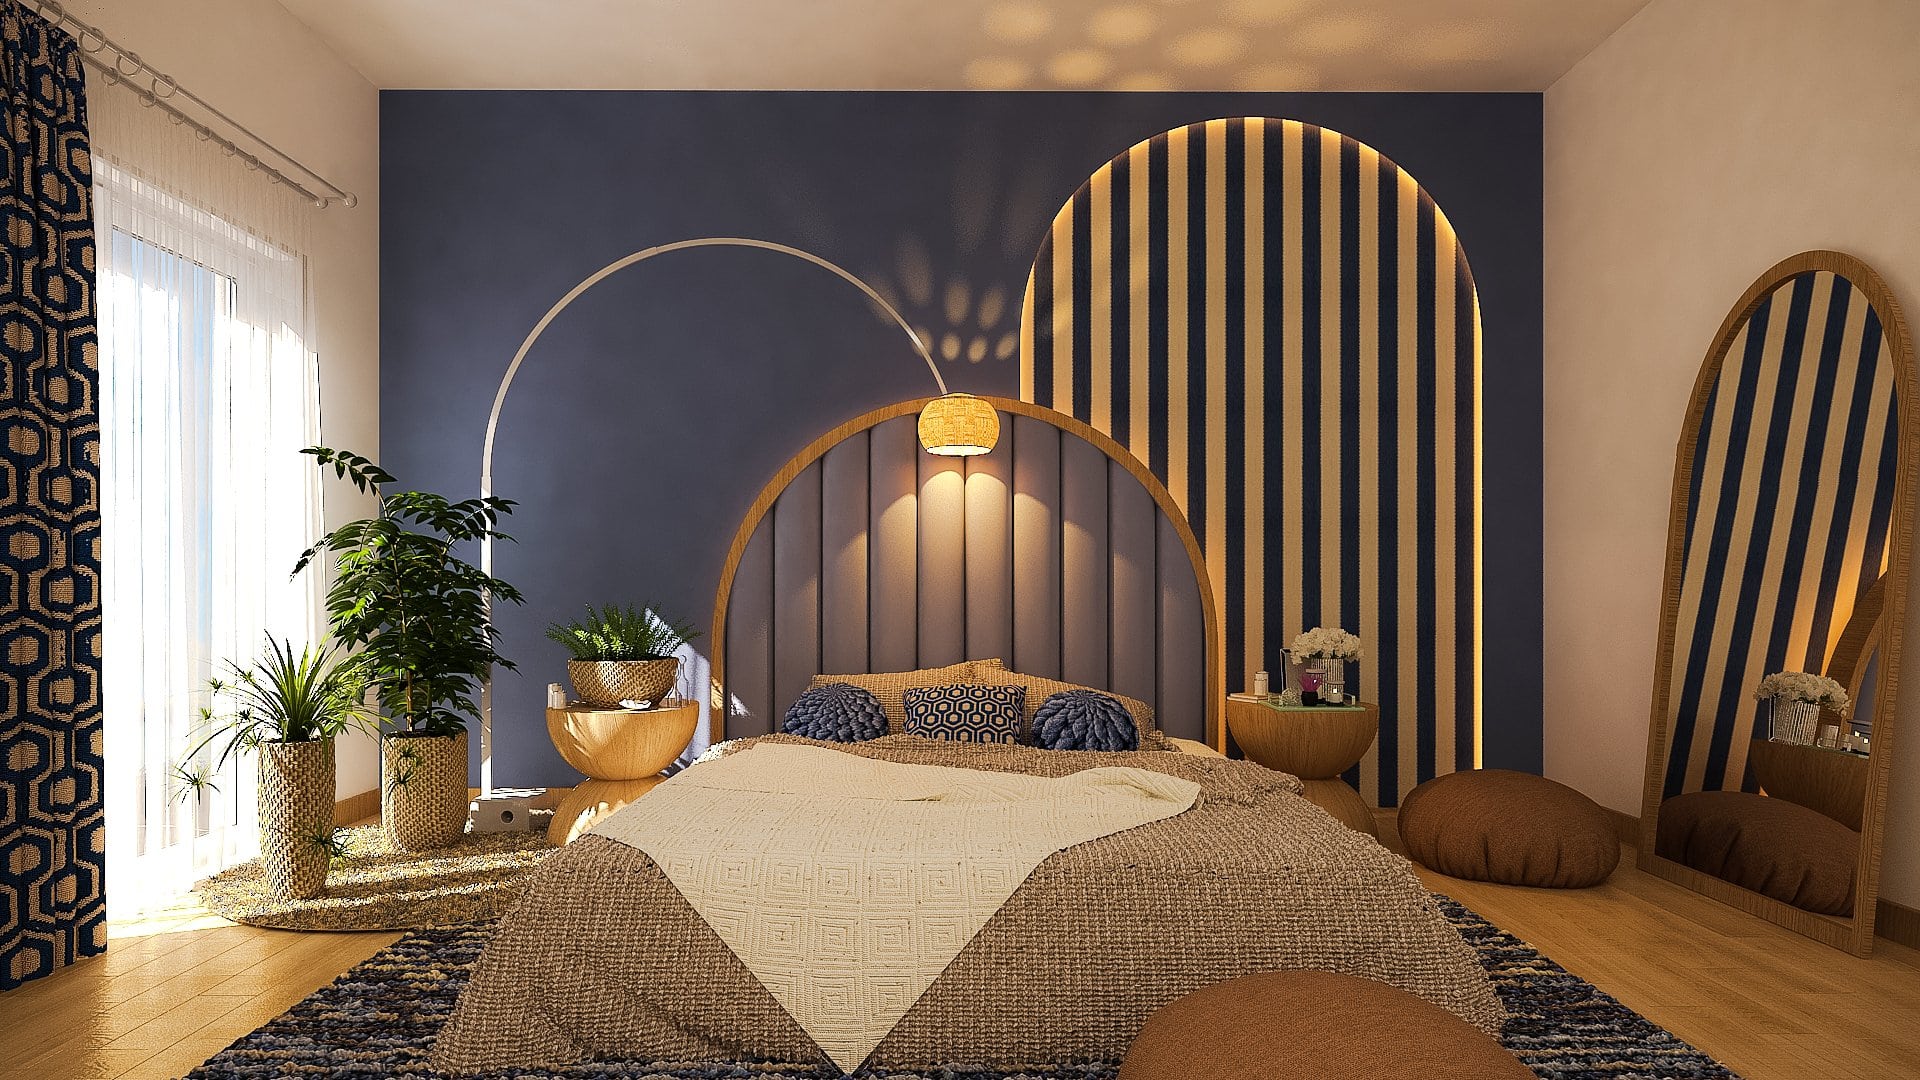 Scandi Meets Art Deco In a Relaxing Bedroom Interior